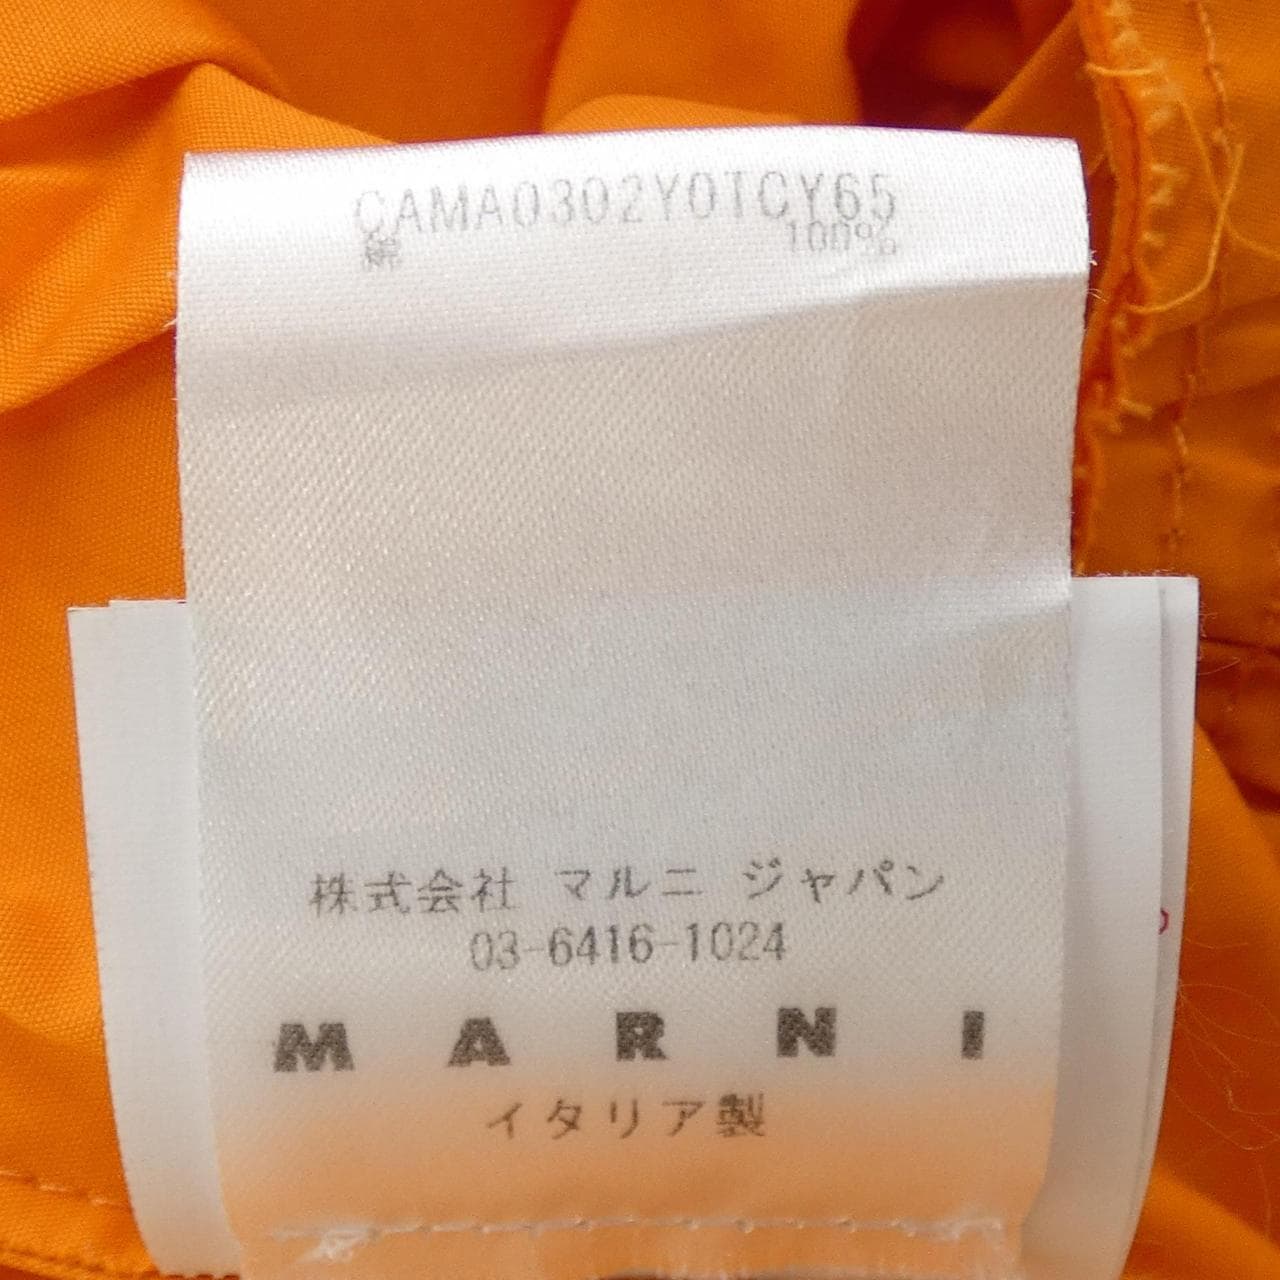 馬尼MARNI夾克